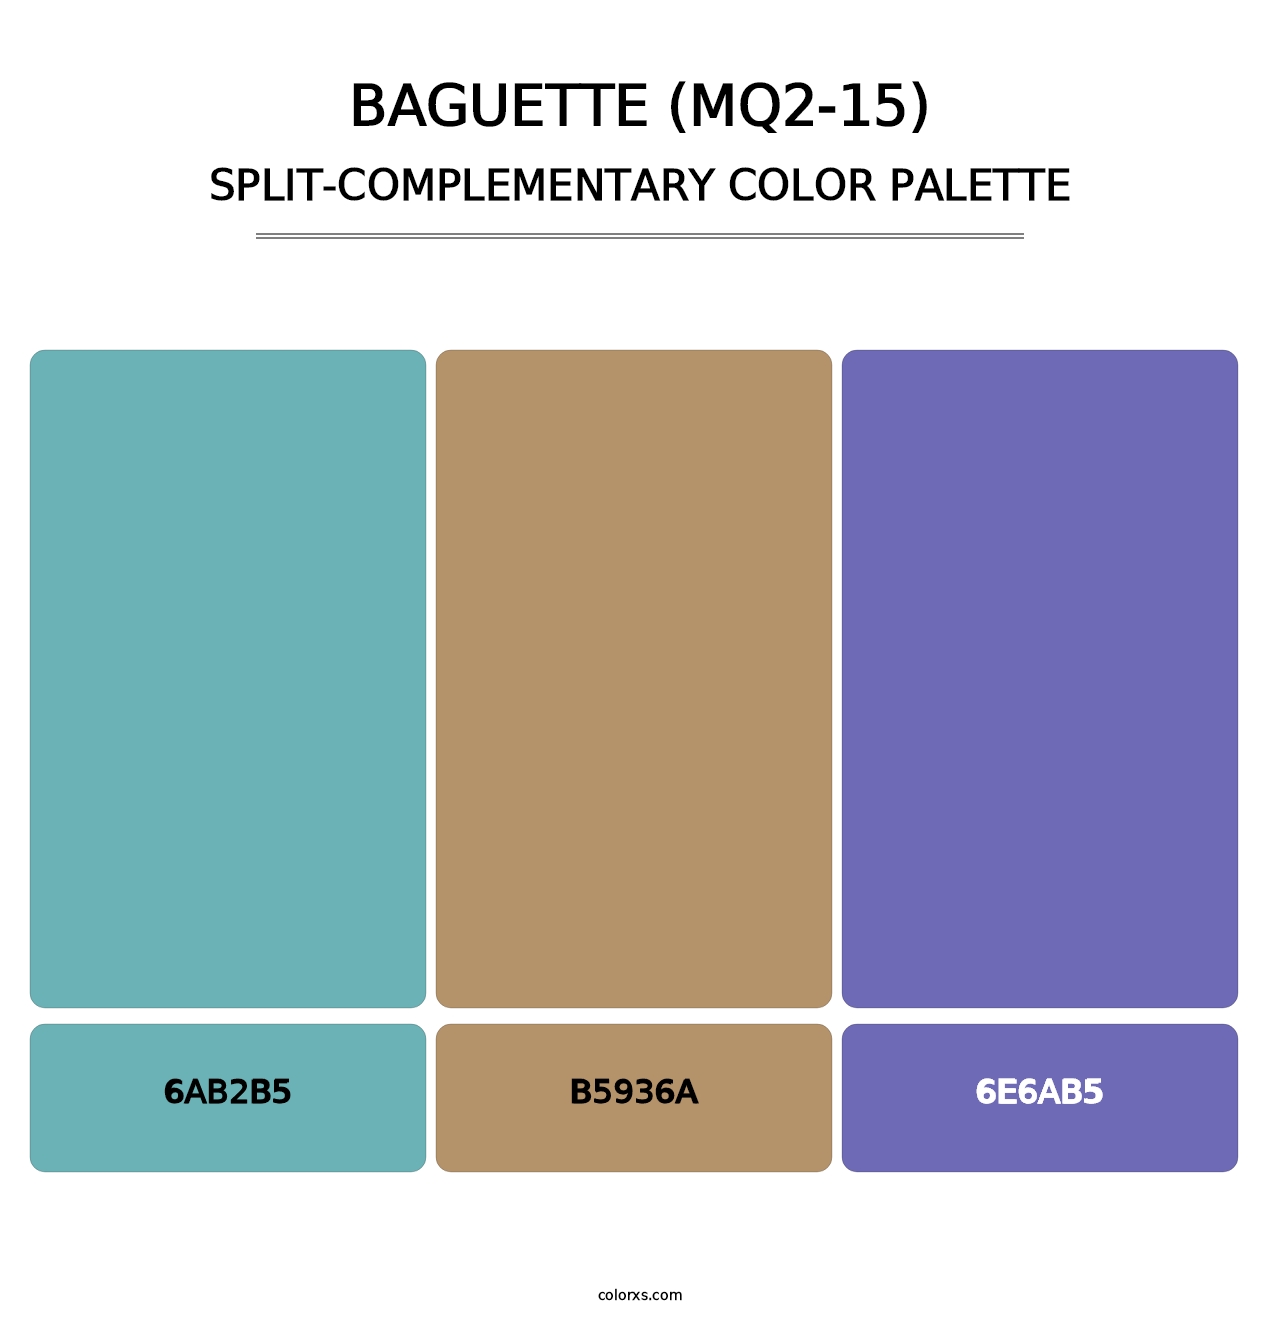 Baguette (MQ2-15) - Split-Complementary Color Palette